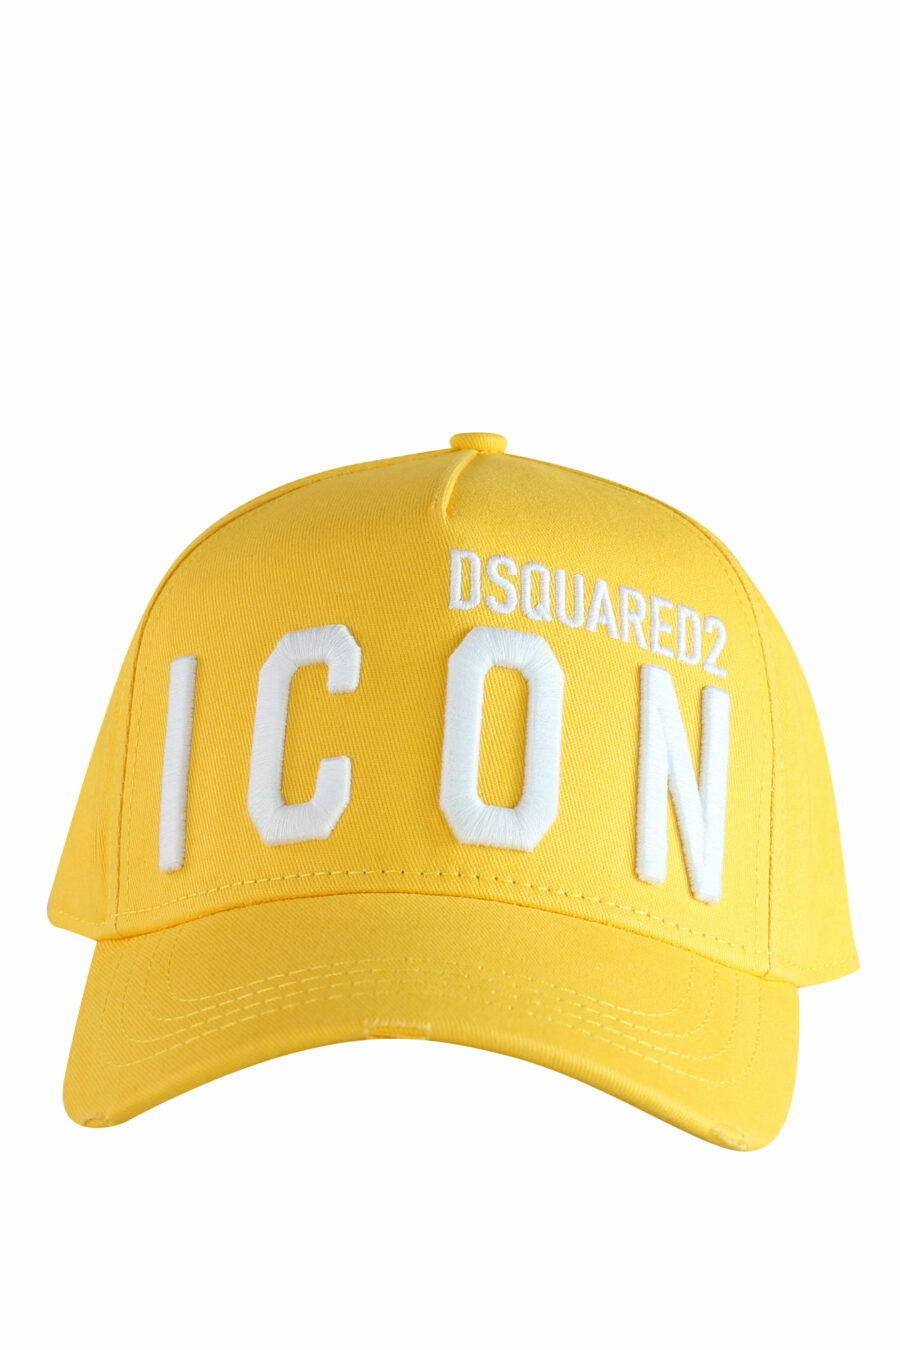 Gorra amarilla ajustable doble logo "icon" - IMG 1237